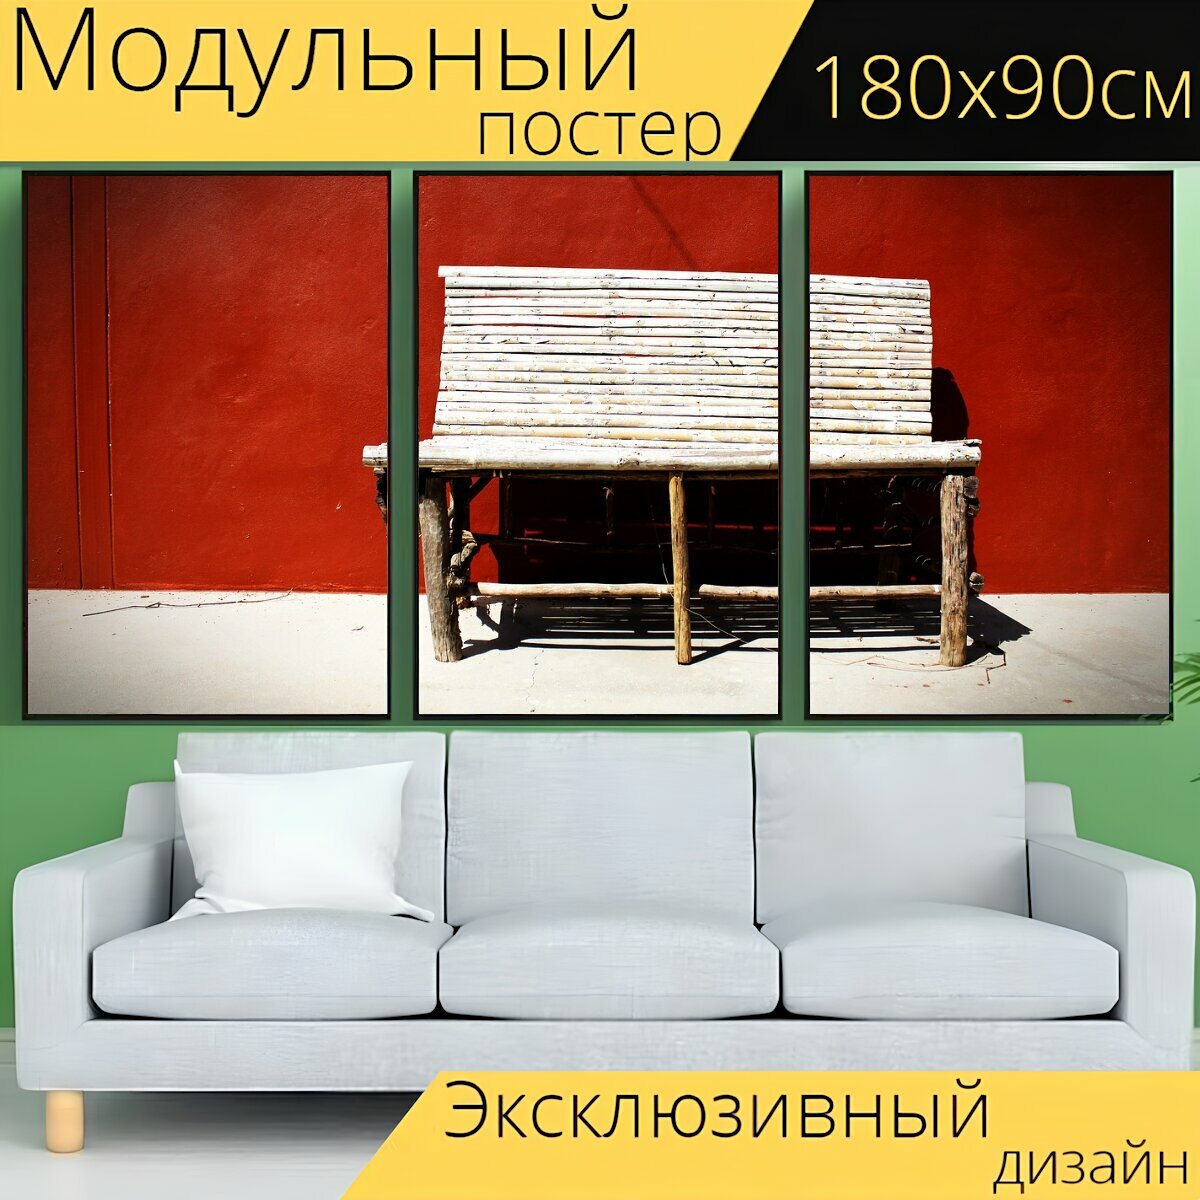 Модульный постер "Стул со стенкой, стул, стена" 180 x 90 см. для интерьера